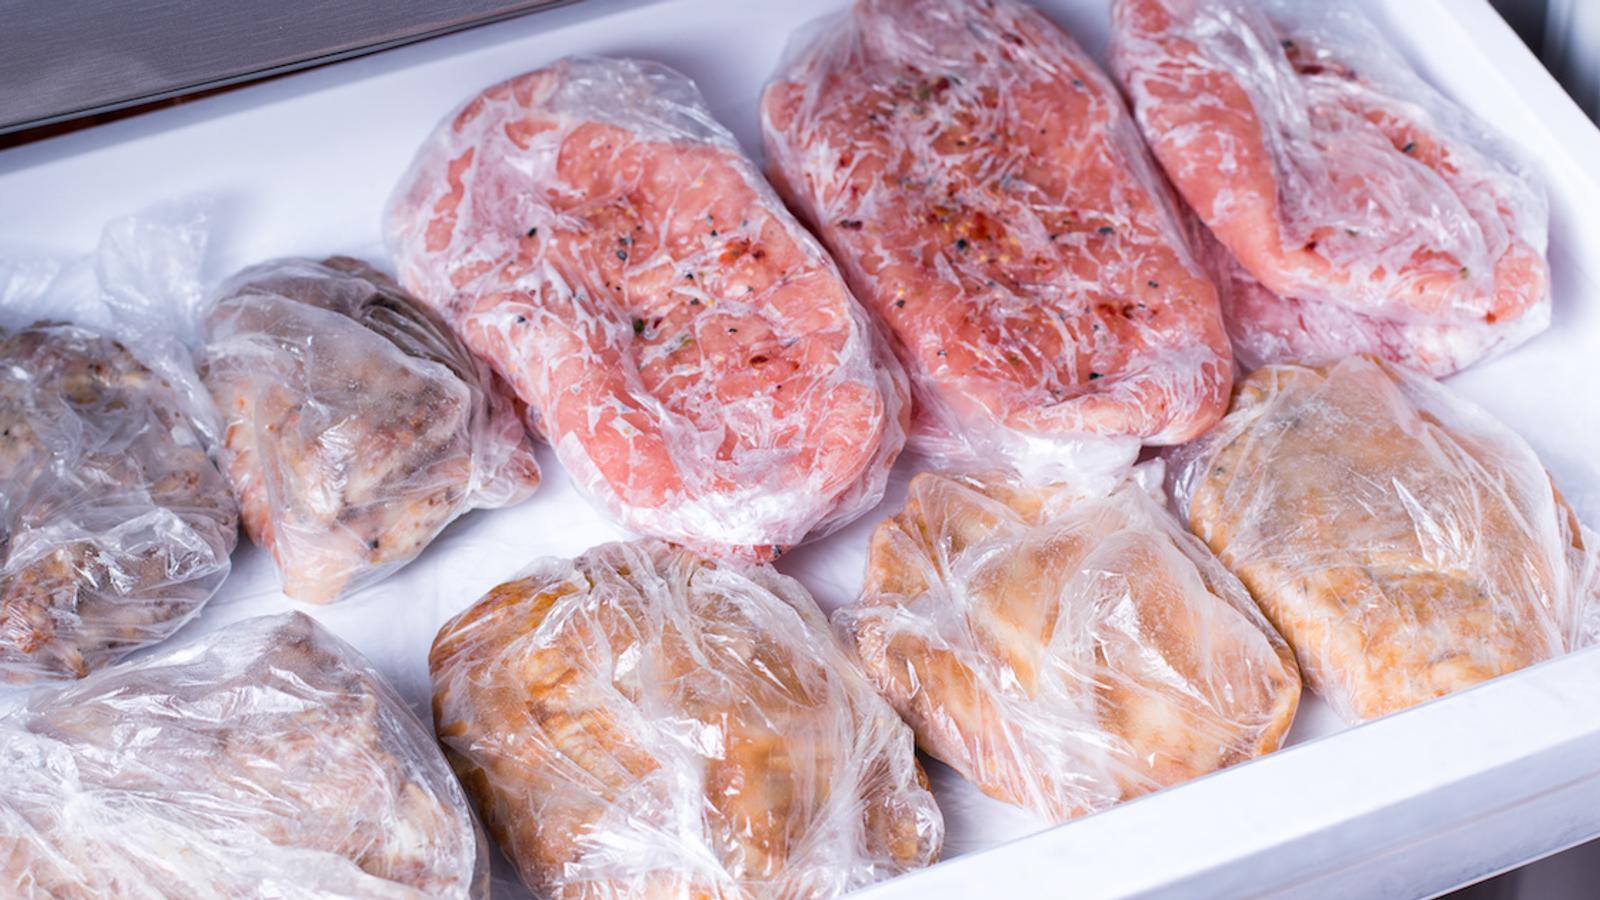 Congélation: combien de temps peut-on congeler chaque type de viande?